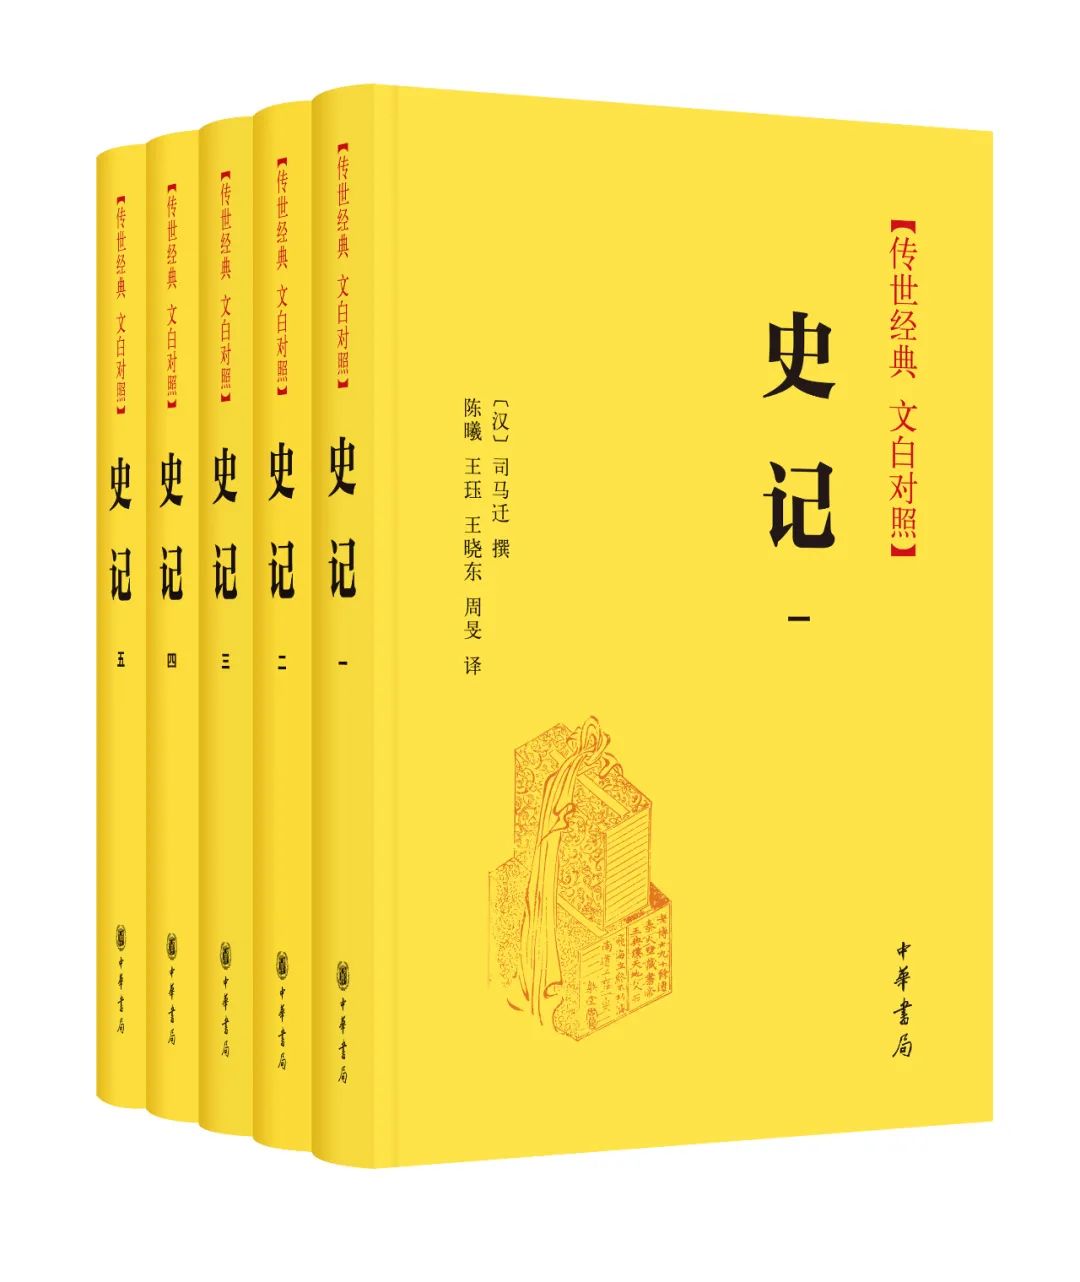 《穿越时空的古籍》火了，中华书局向您推荐这些经典